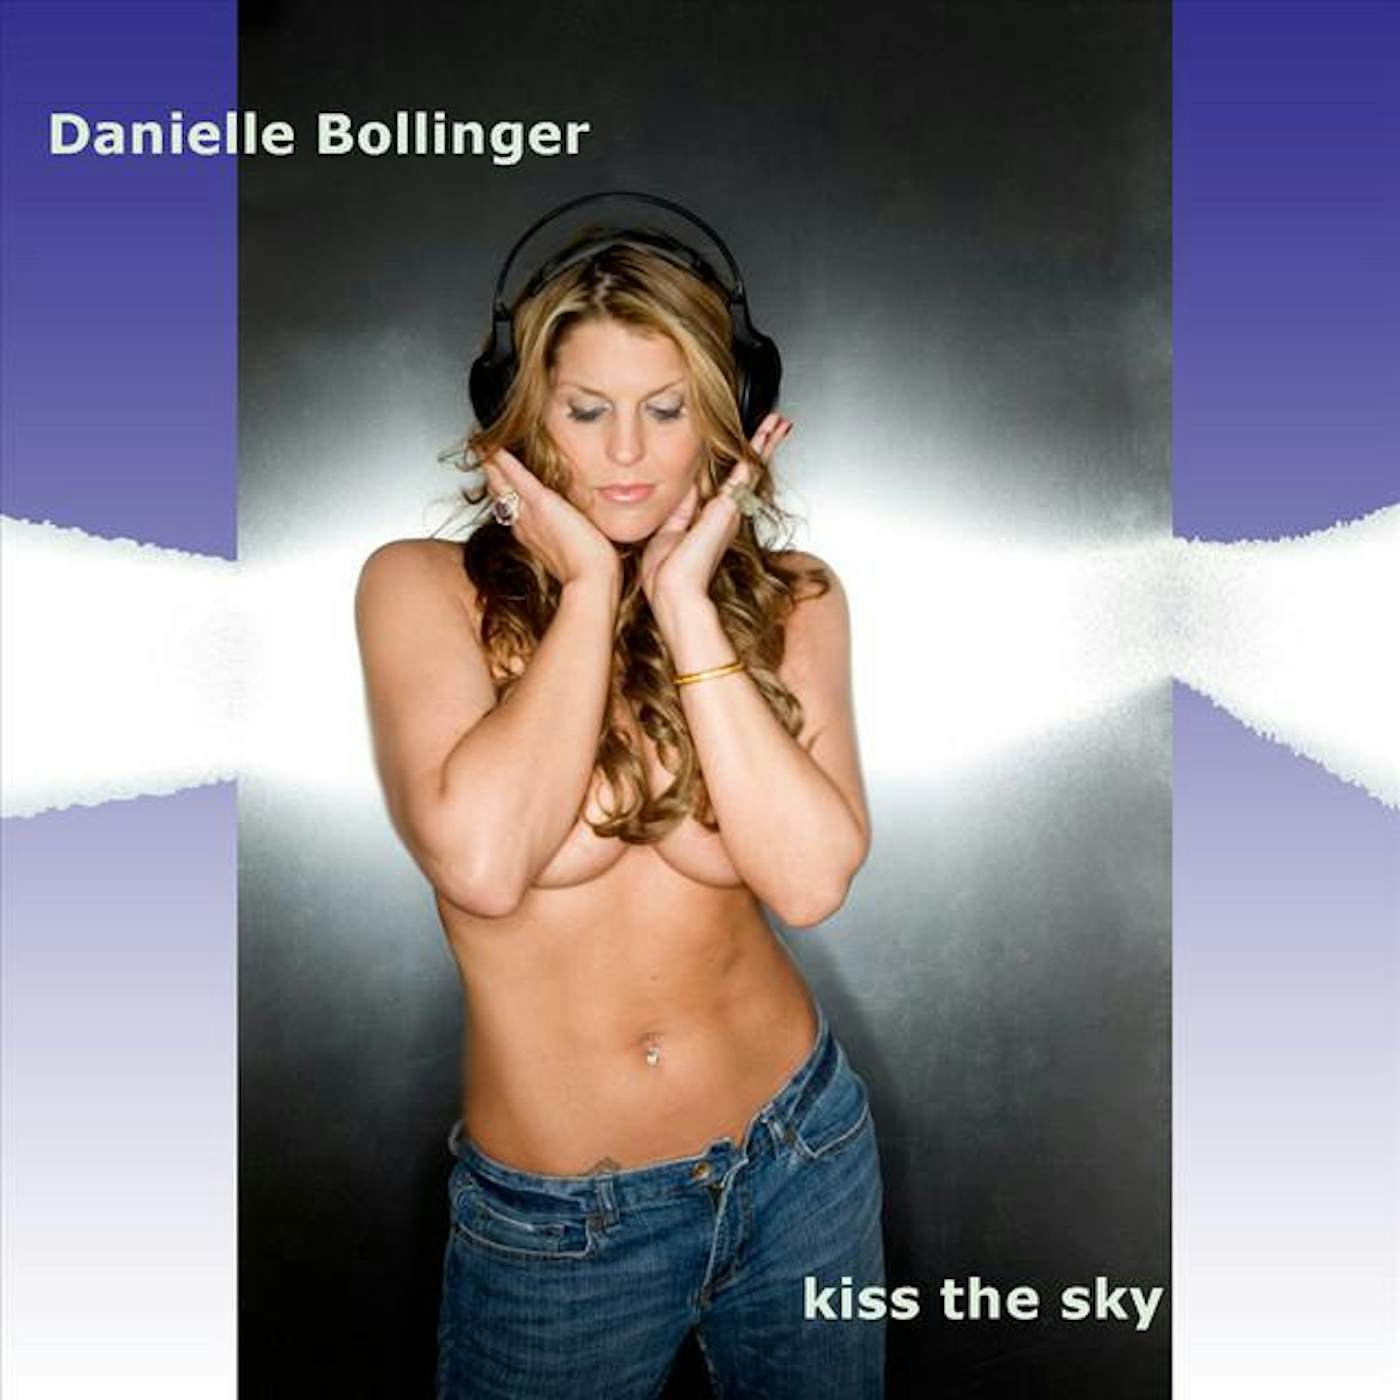 Danielle Bollinger